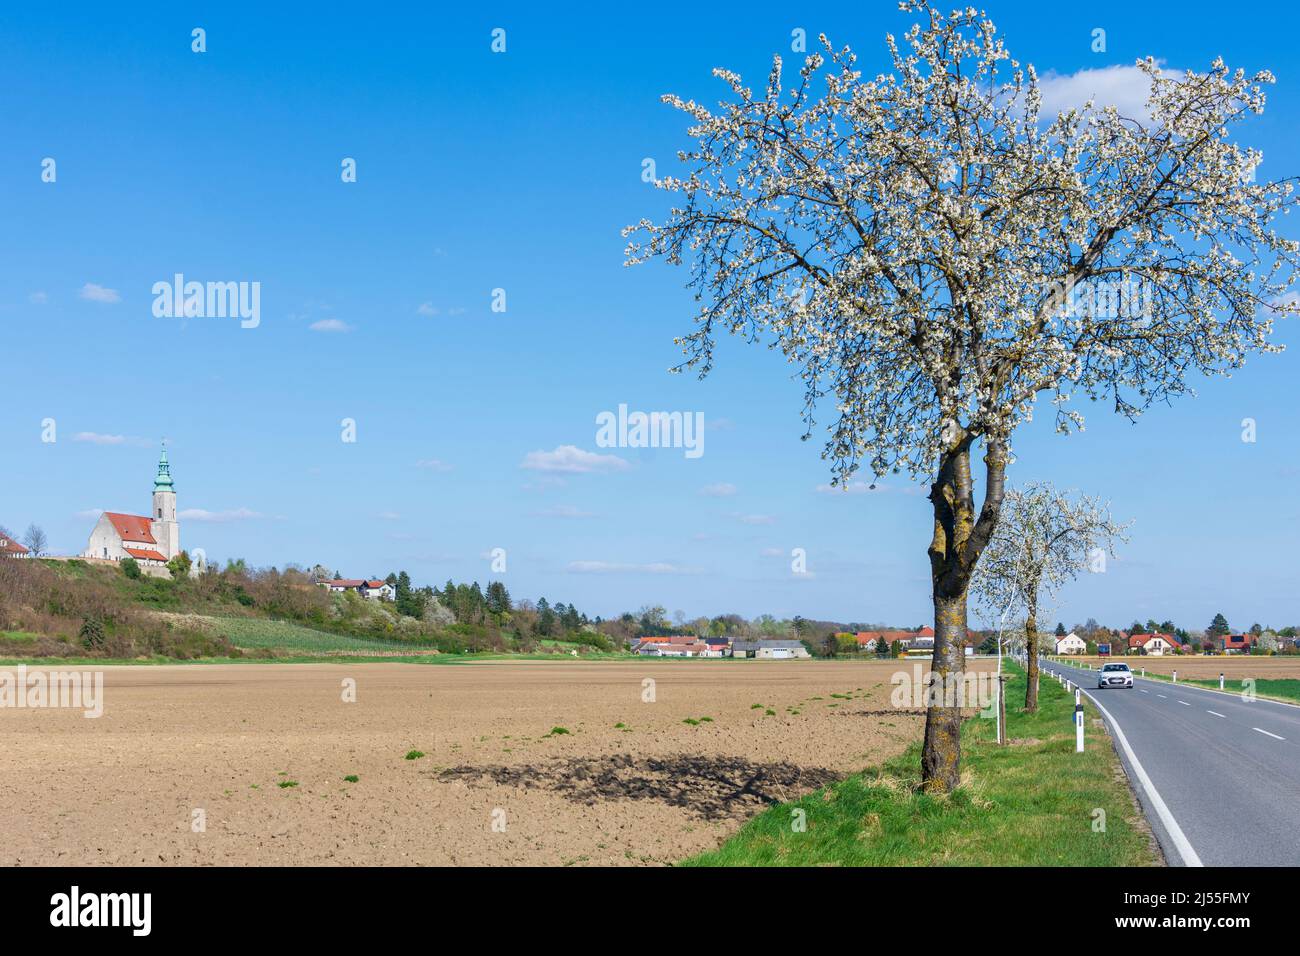 Hausleiten: church Hausleiten, fruit trees blossom, ridge Wagram in Donau, Niederösterreich, Lower Austria, Austria Stock Photo